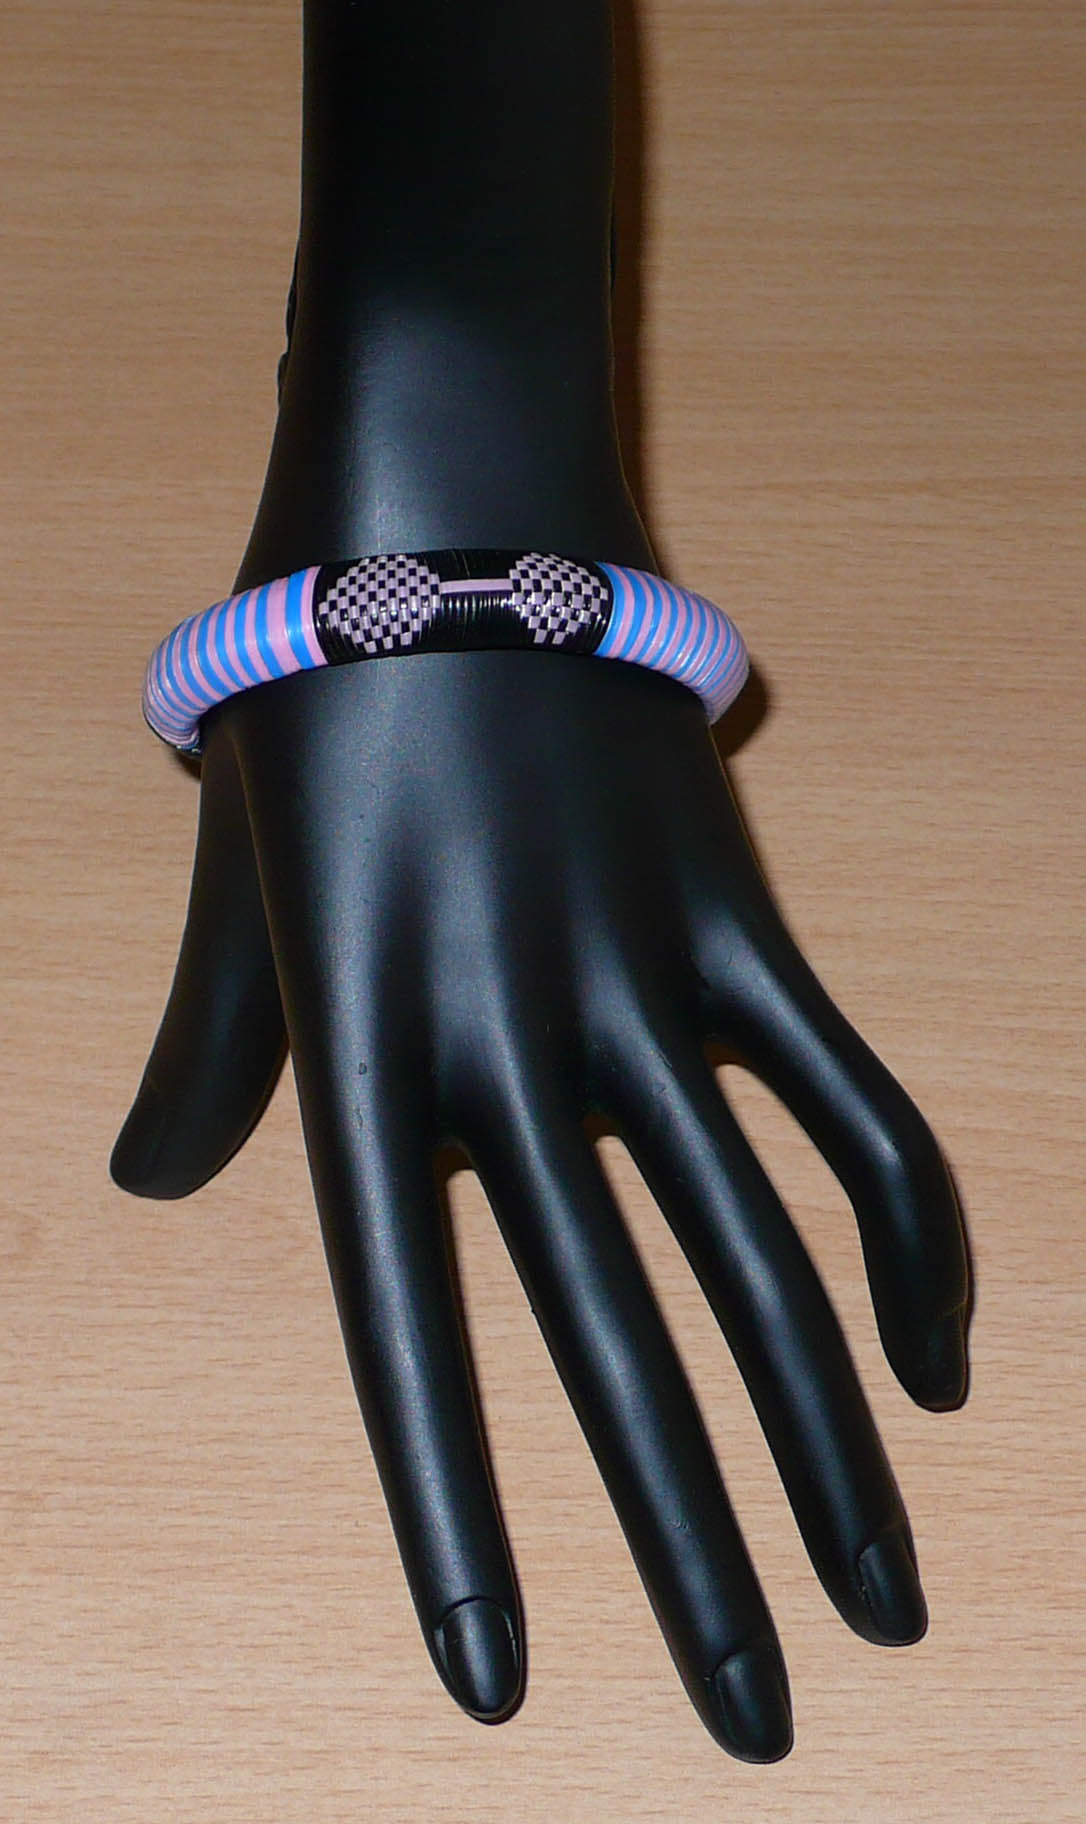 Bracelet africain eco-friendly à motifs ethniques tressés avec de fines bandes de plastique recyclé noir, rose et bleu. 